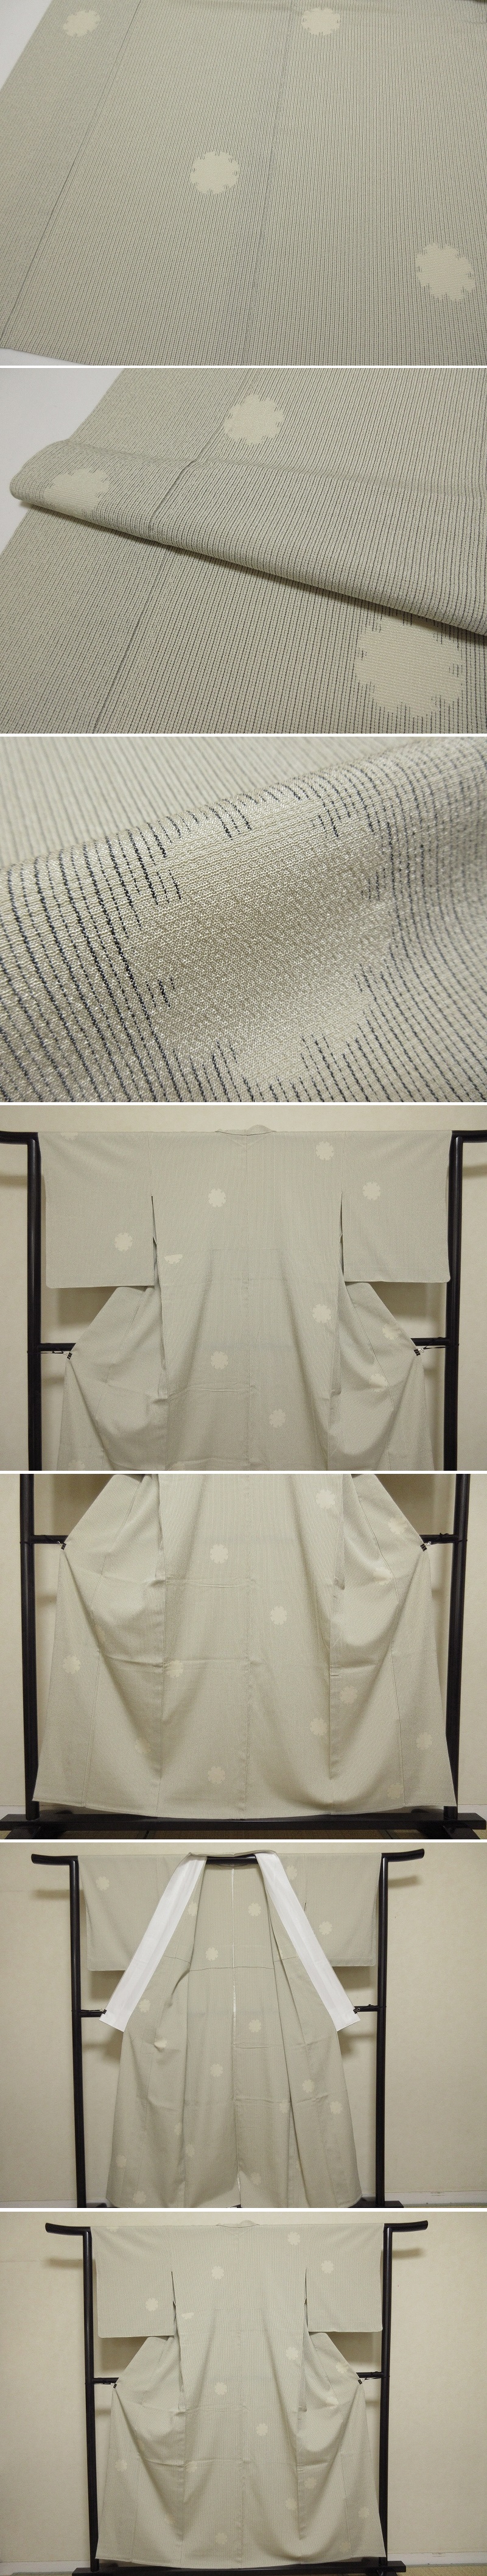 ドークブア 本塩沢 単衣 縦縞 雪輪 象牙色 しつけ付 極上の逸品 405－日本代購代Bid第一推介「Funbid」